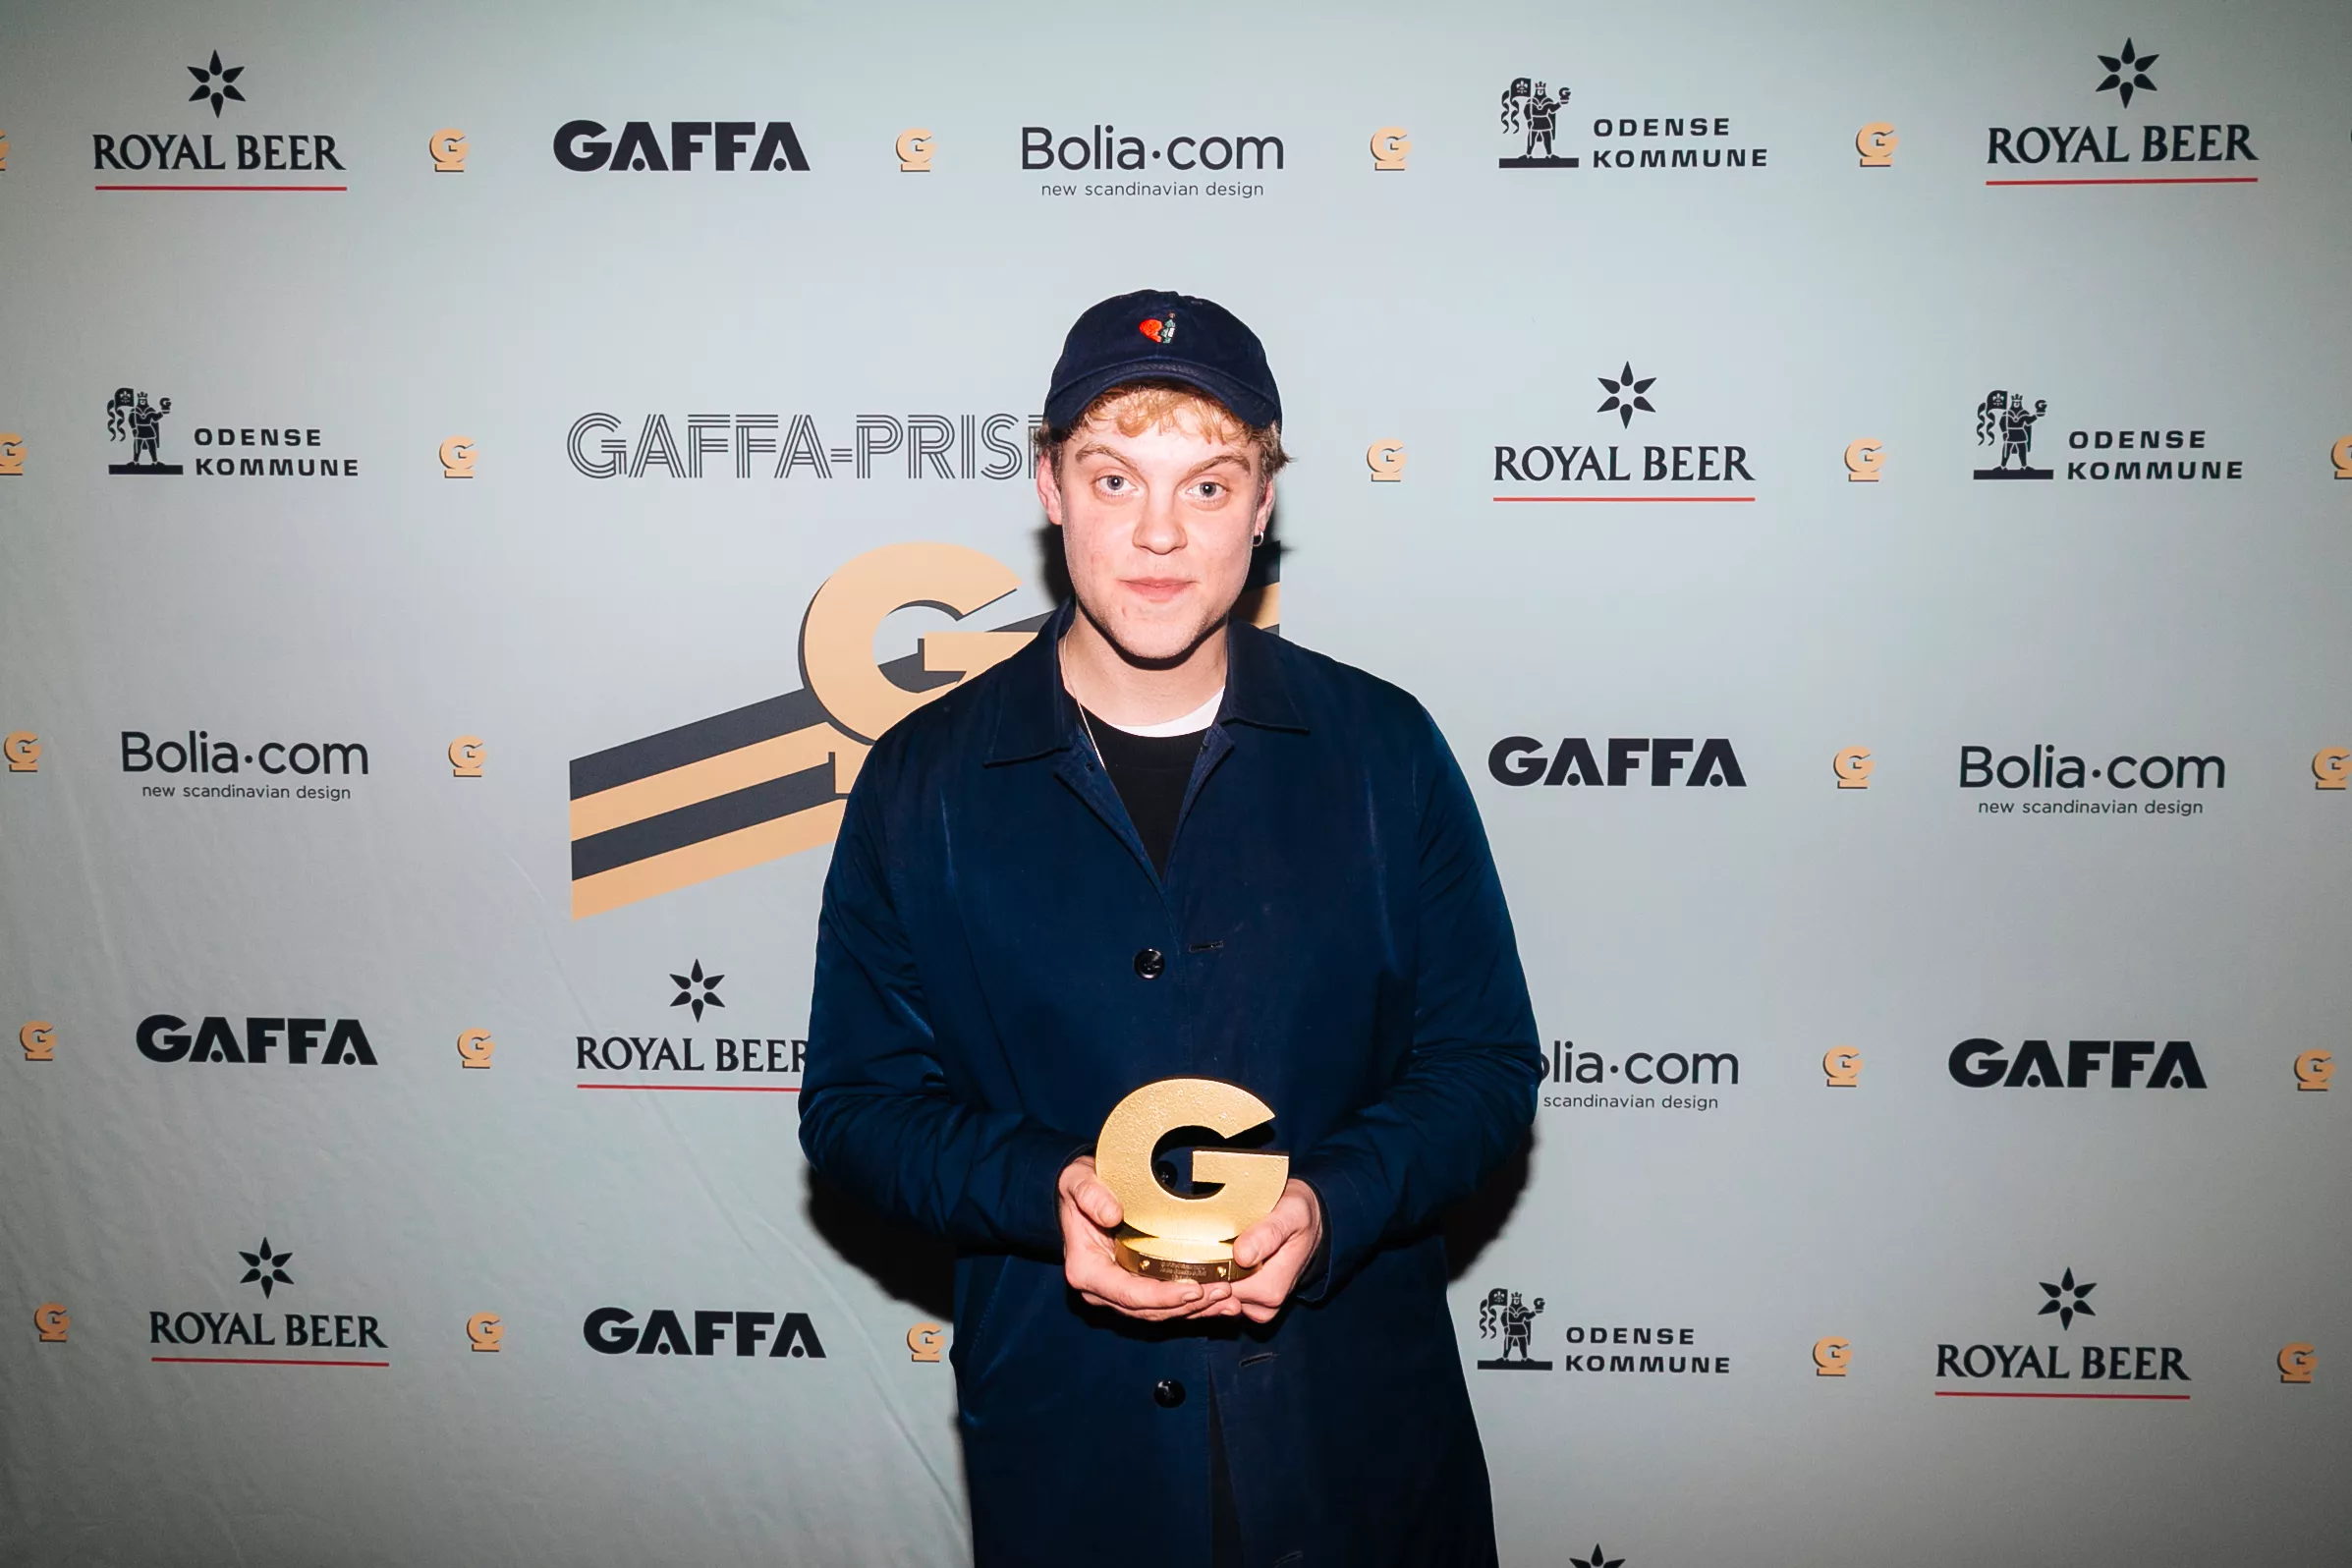 GAFFA-Pris-vinder Hjalmer: – Jeg er altid pessimistisk, til det modsatte er bevist